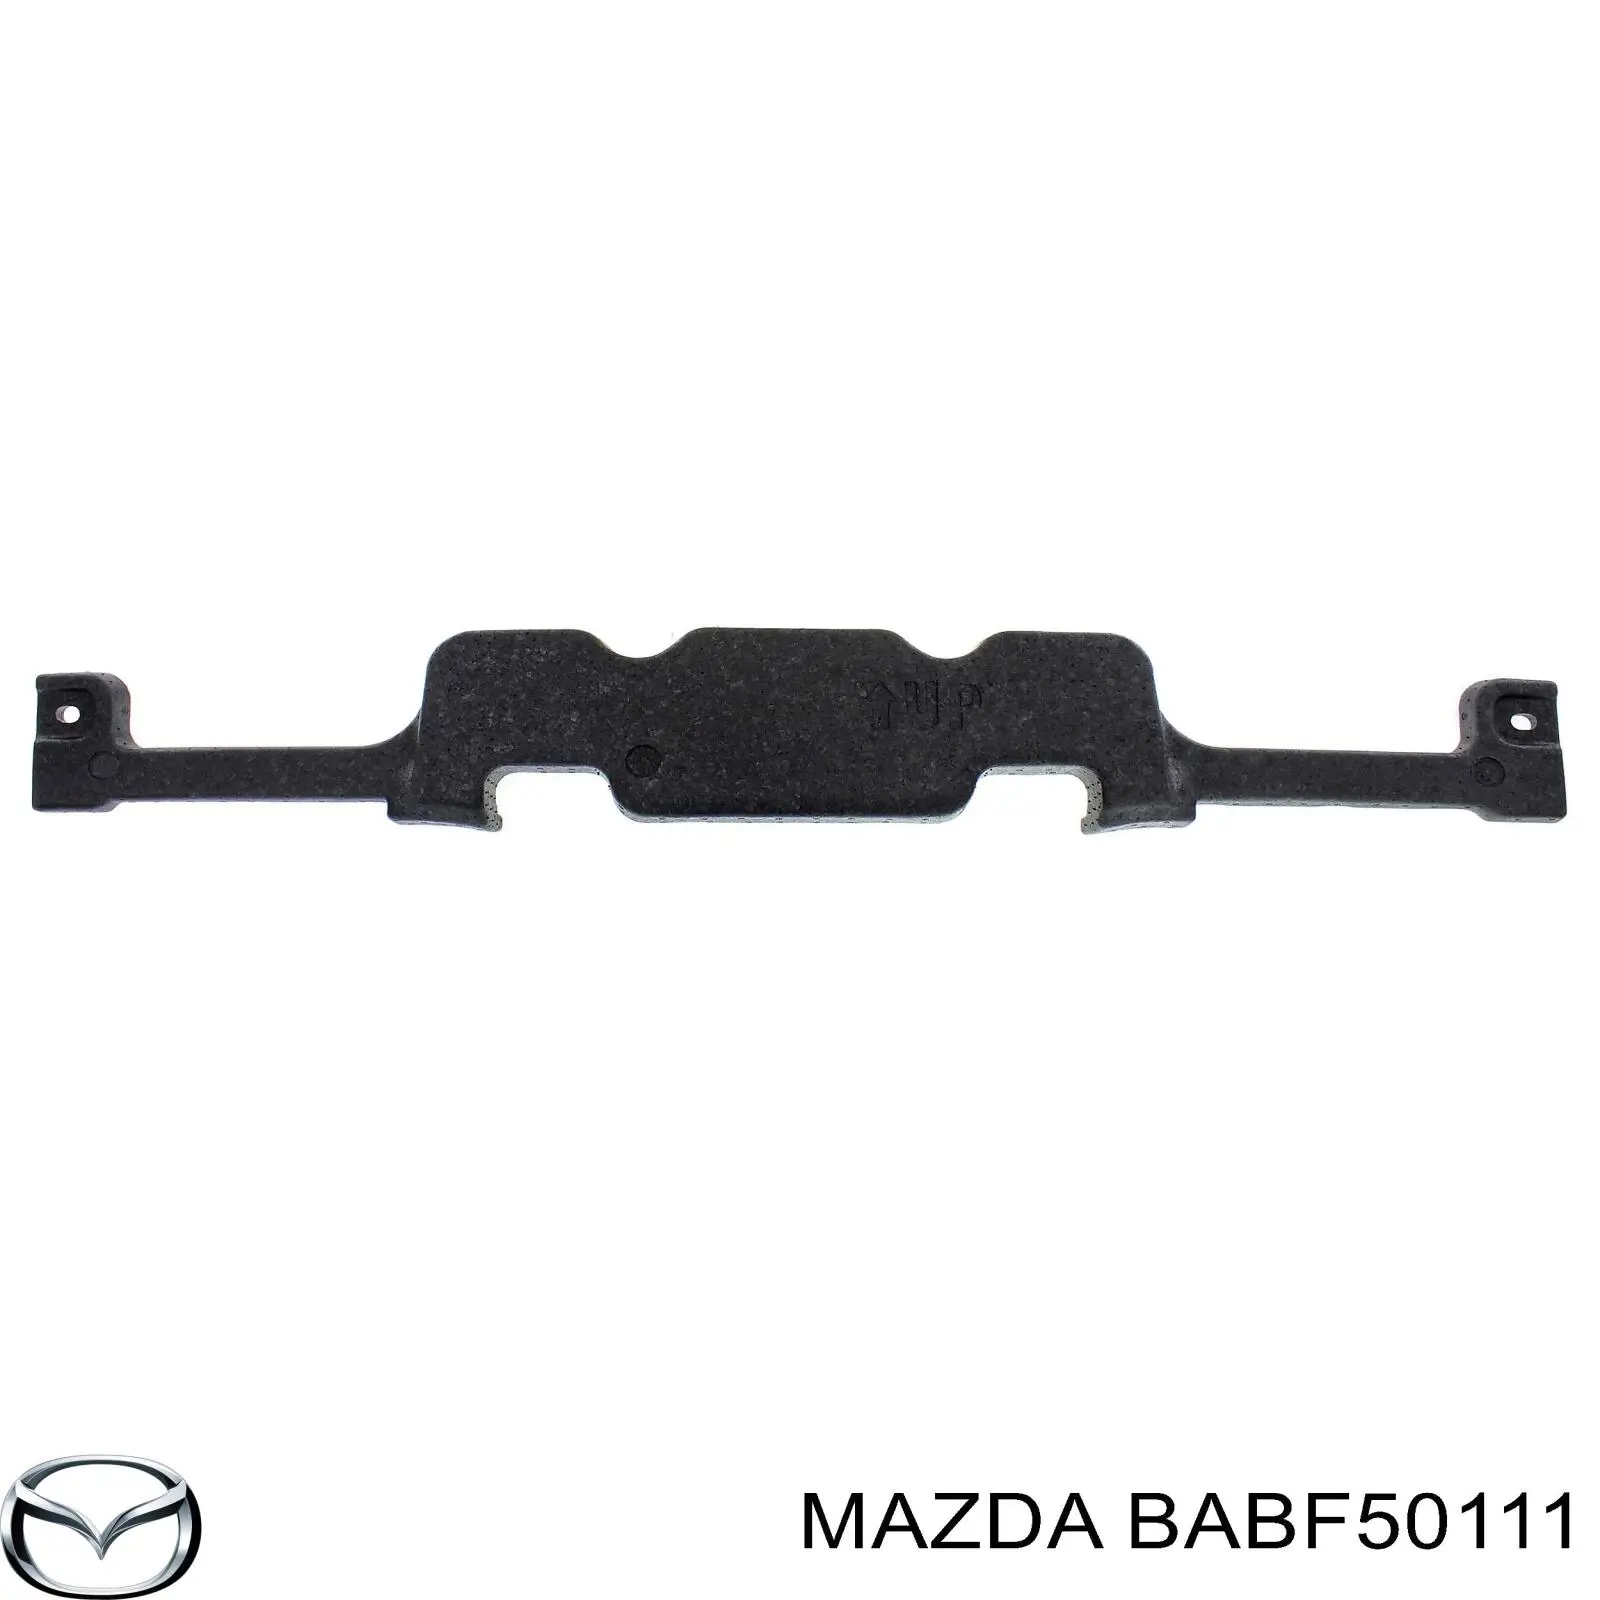 BABF50111 Mazda absorbente parachoques delantero